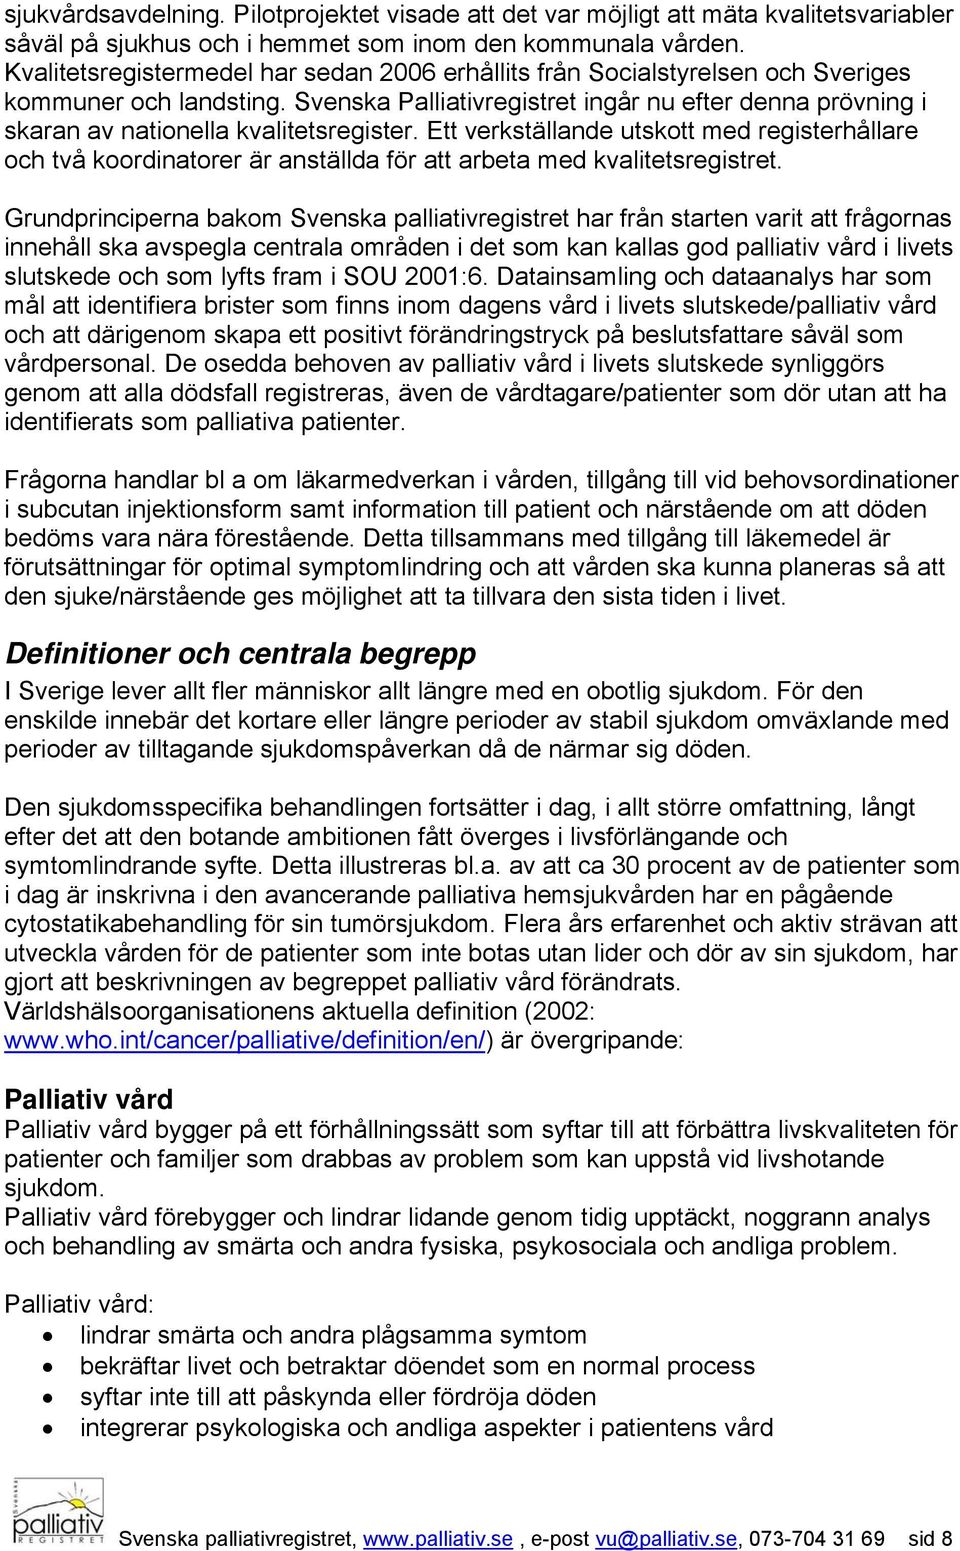 Svenska Palliativregistret ingår nu efter denna prövning i skaran av nationella kvalitetsregister.